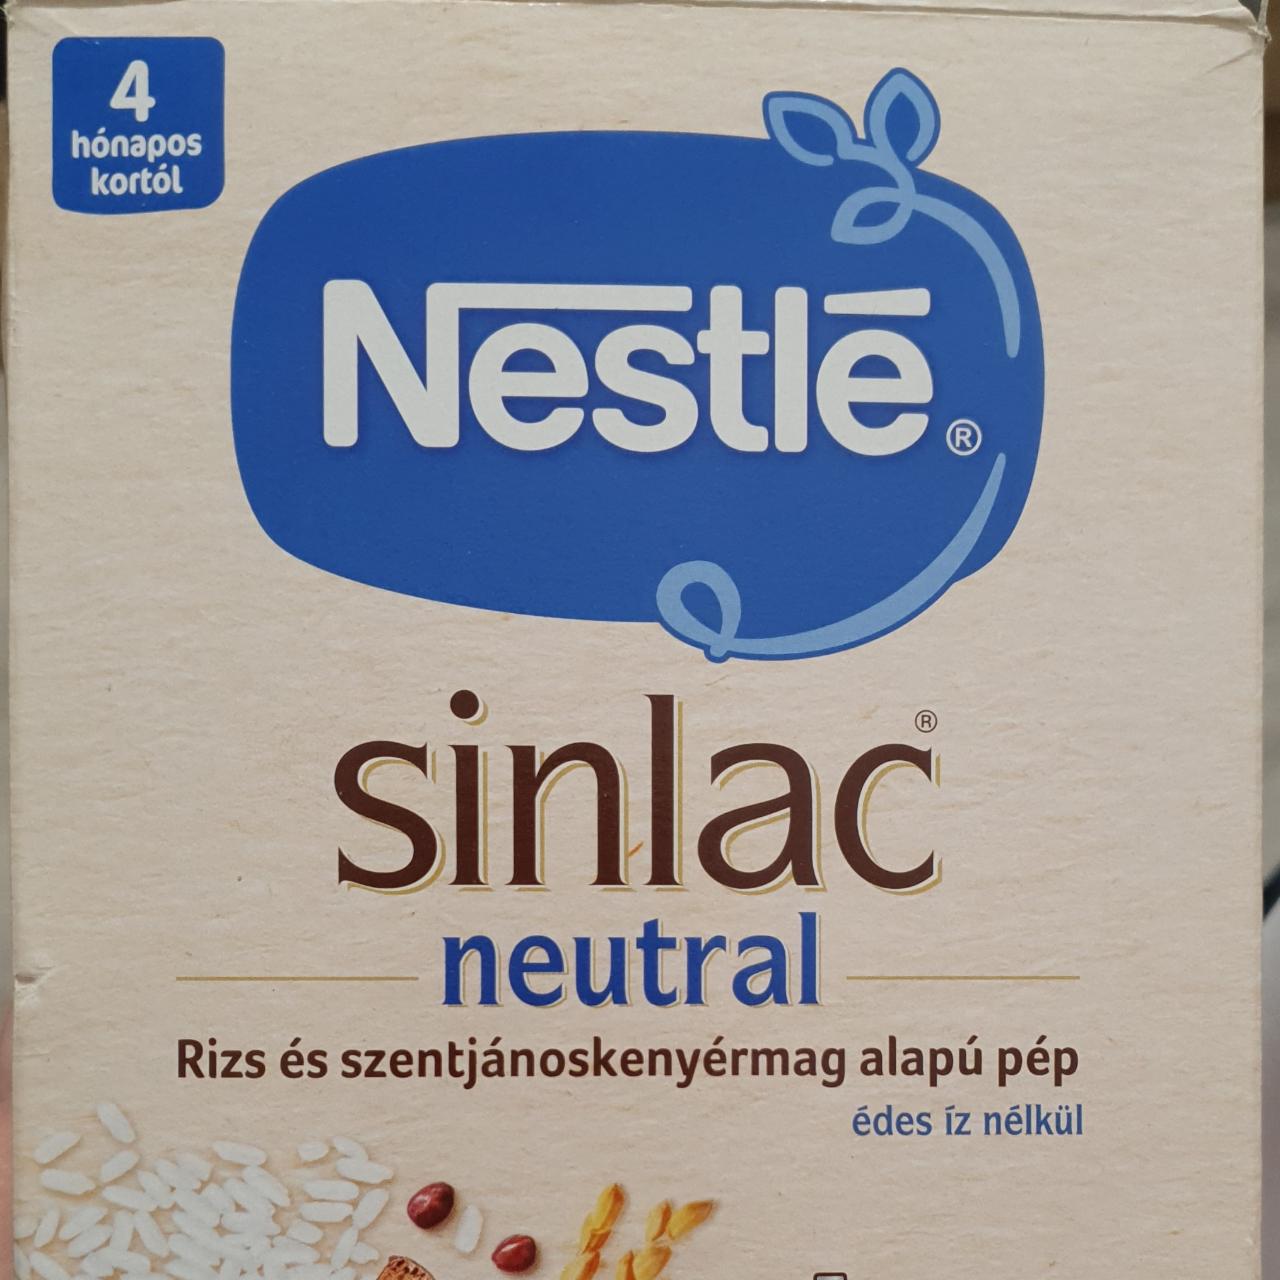 Képek - Sinlac neutral pép Nestlé